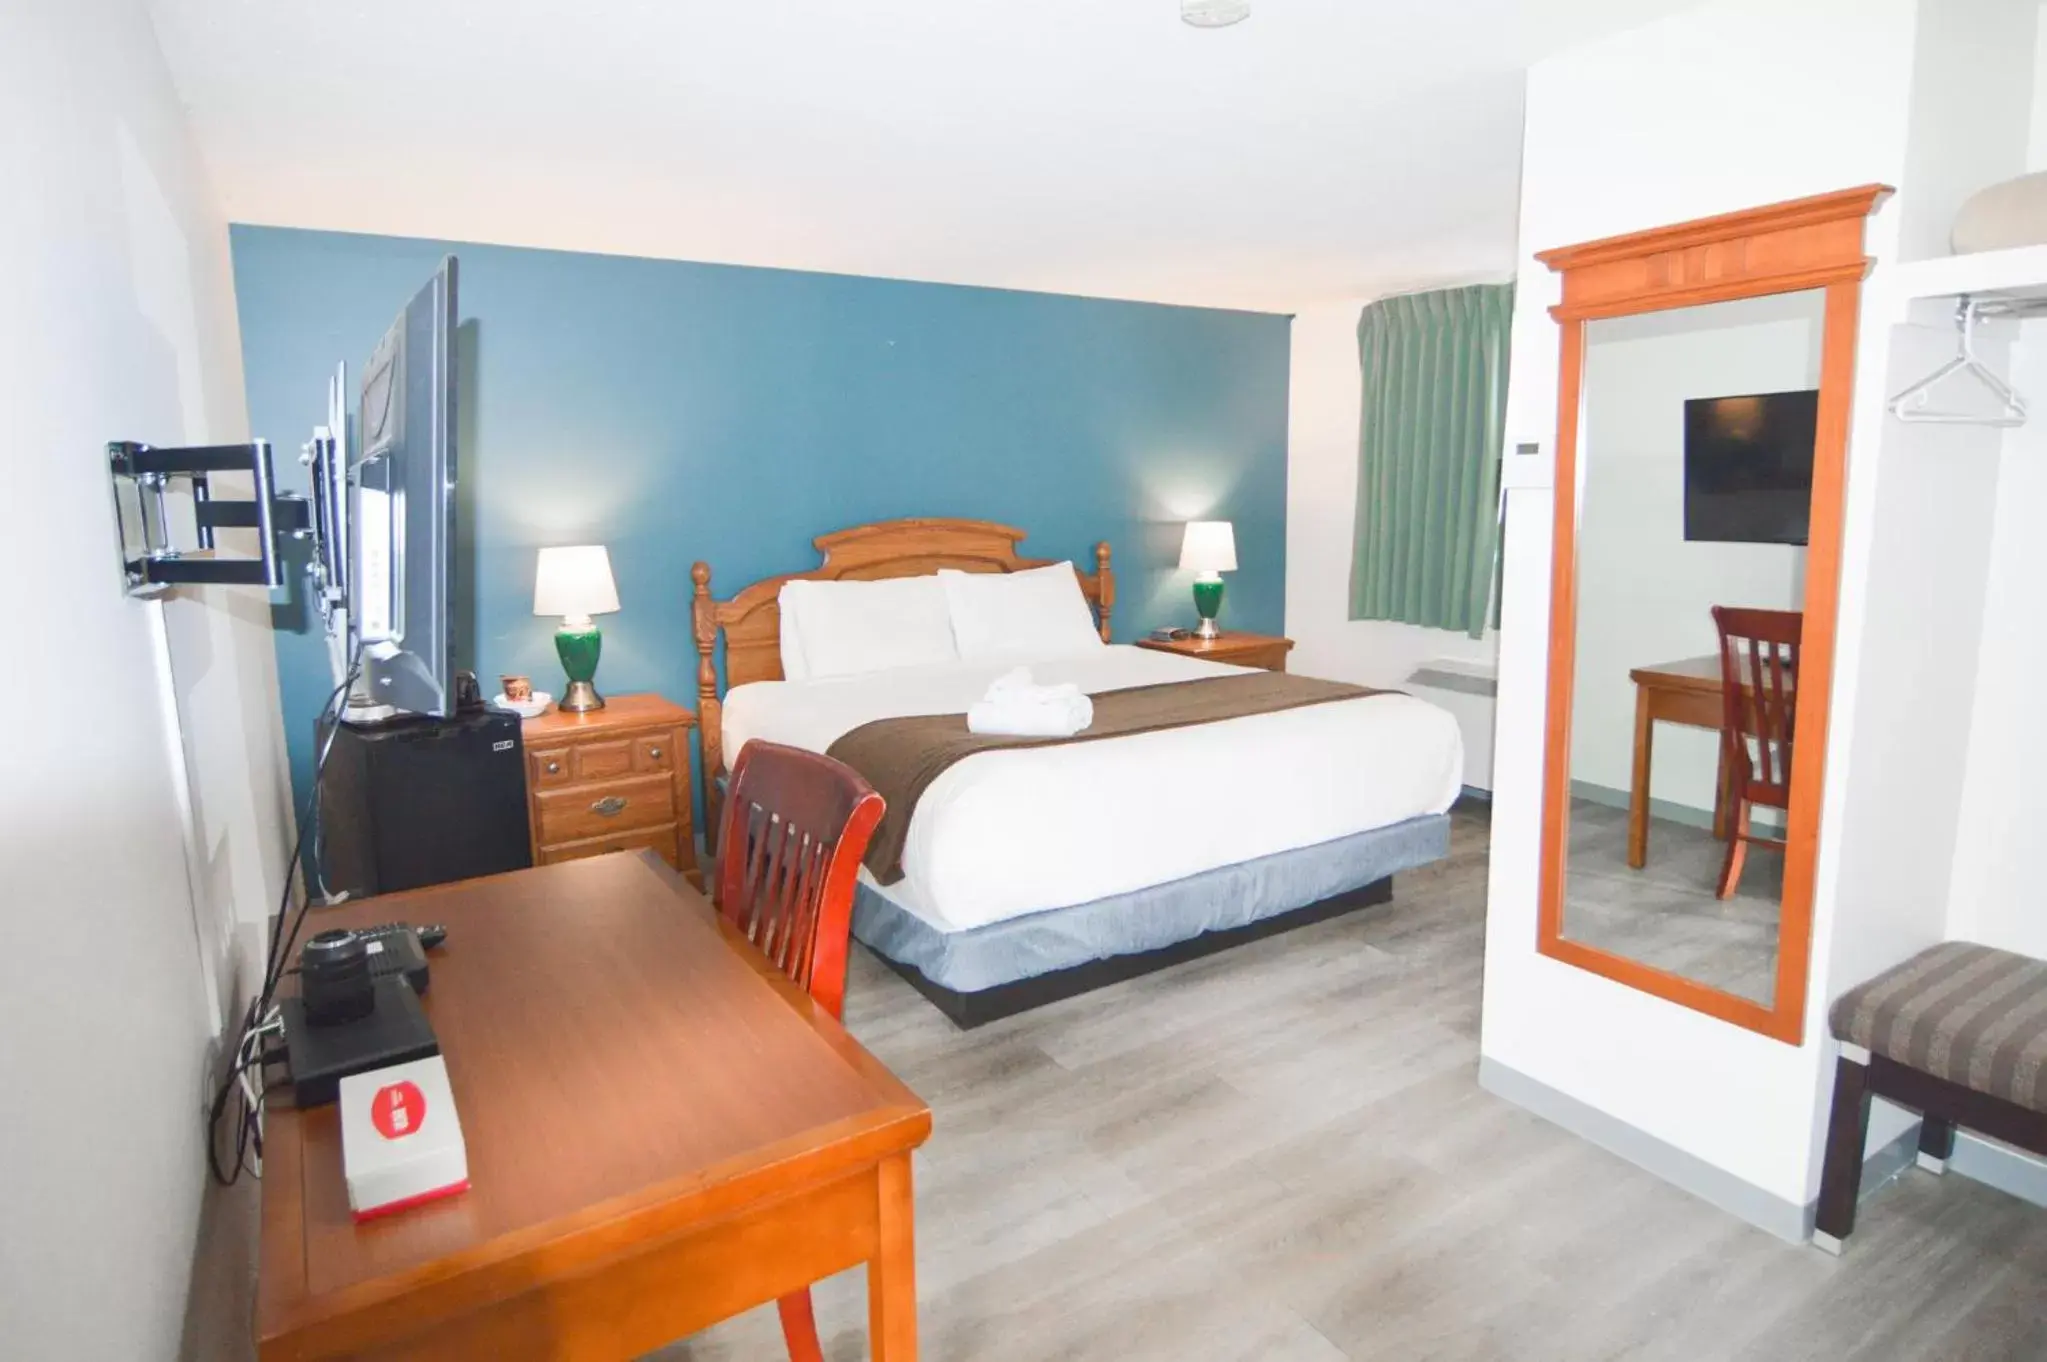 Bedroom in Spanish Villa Resort